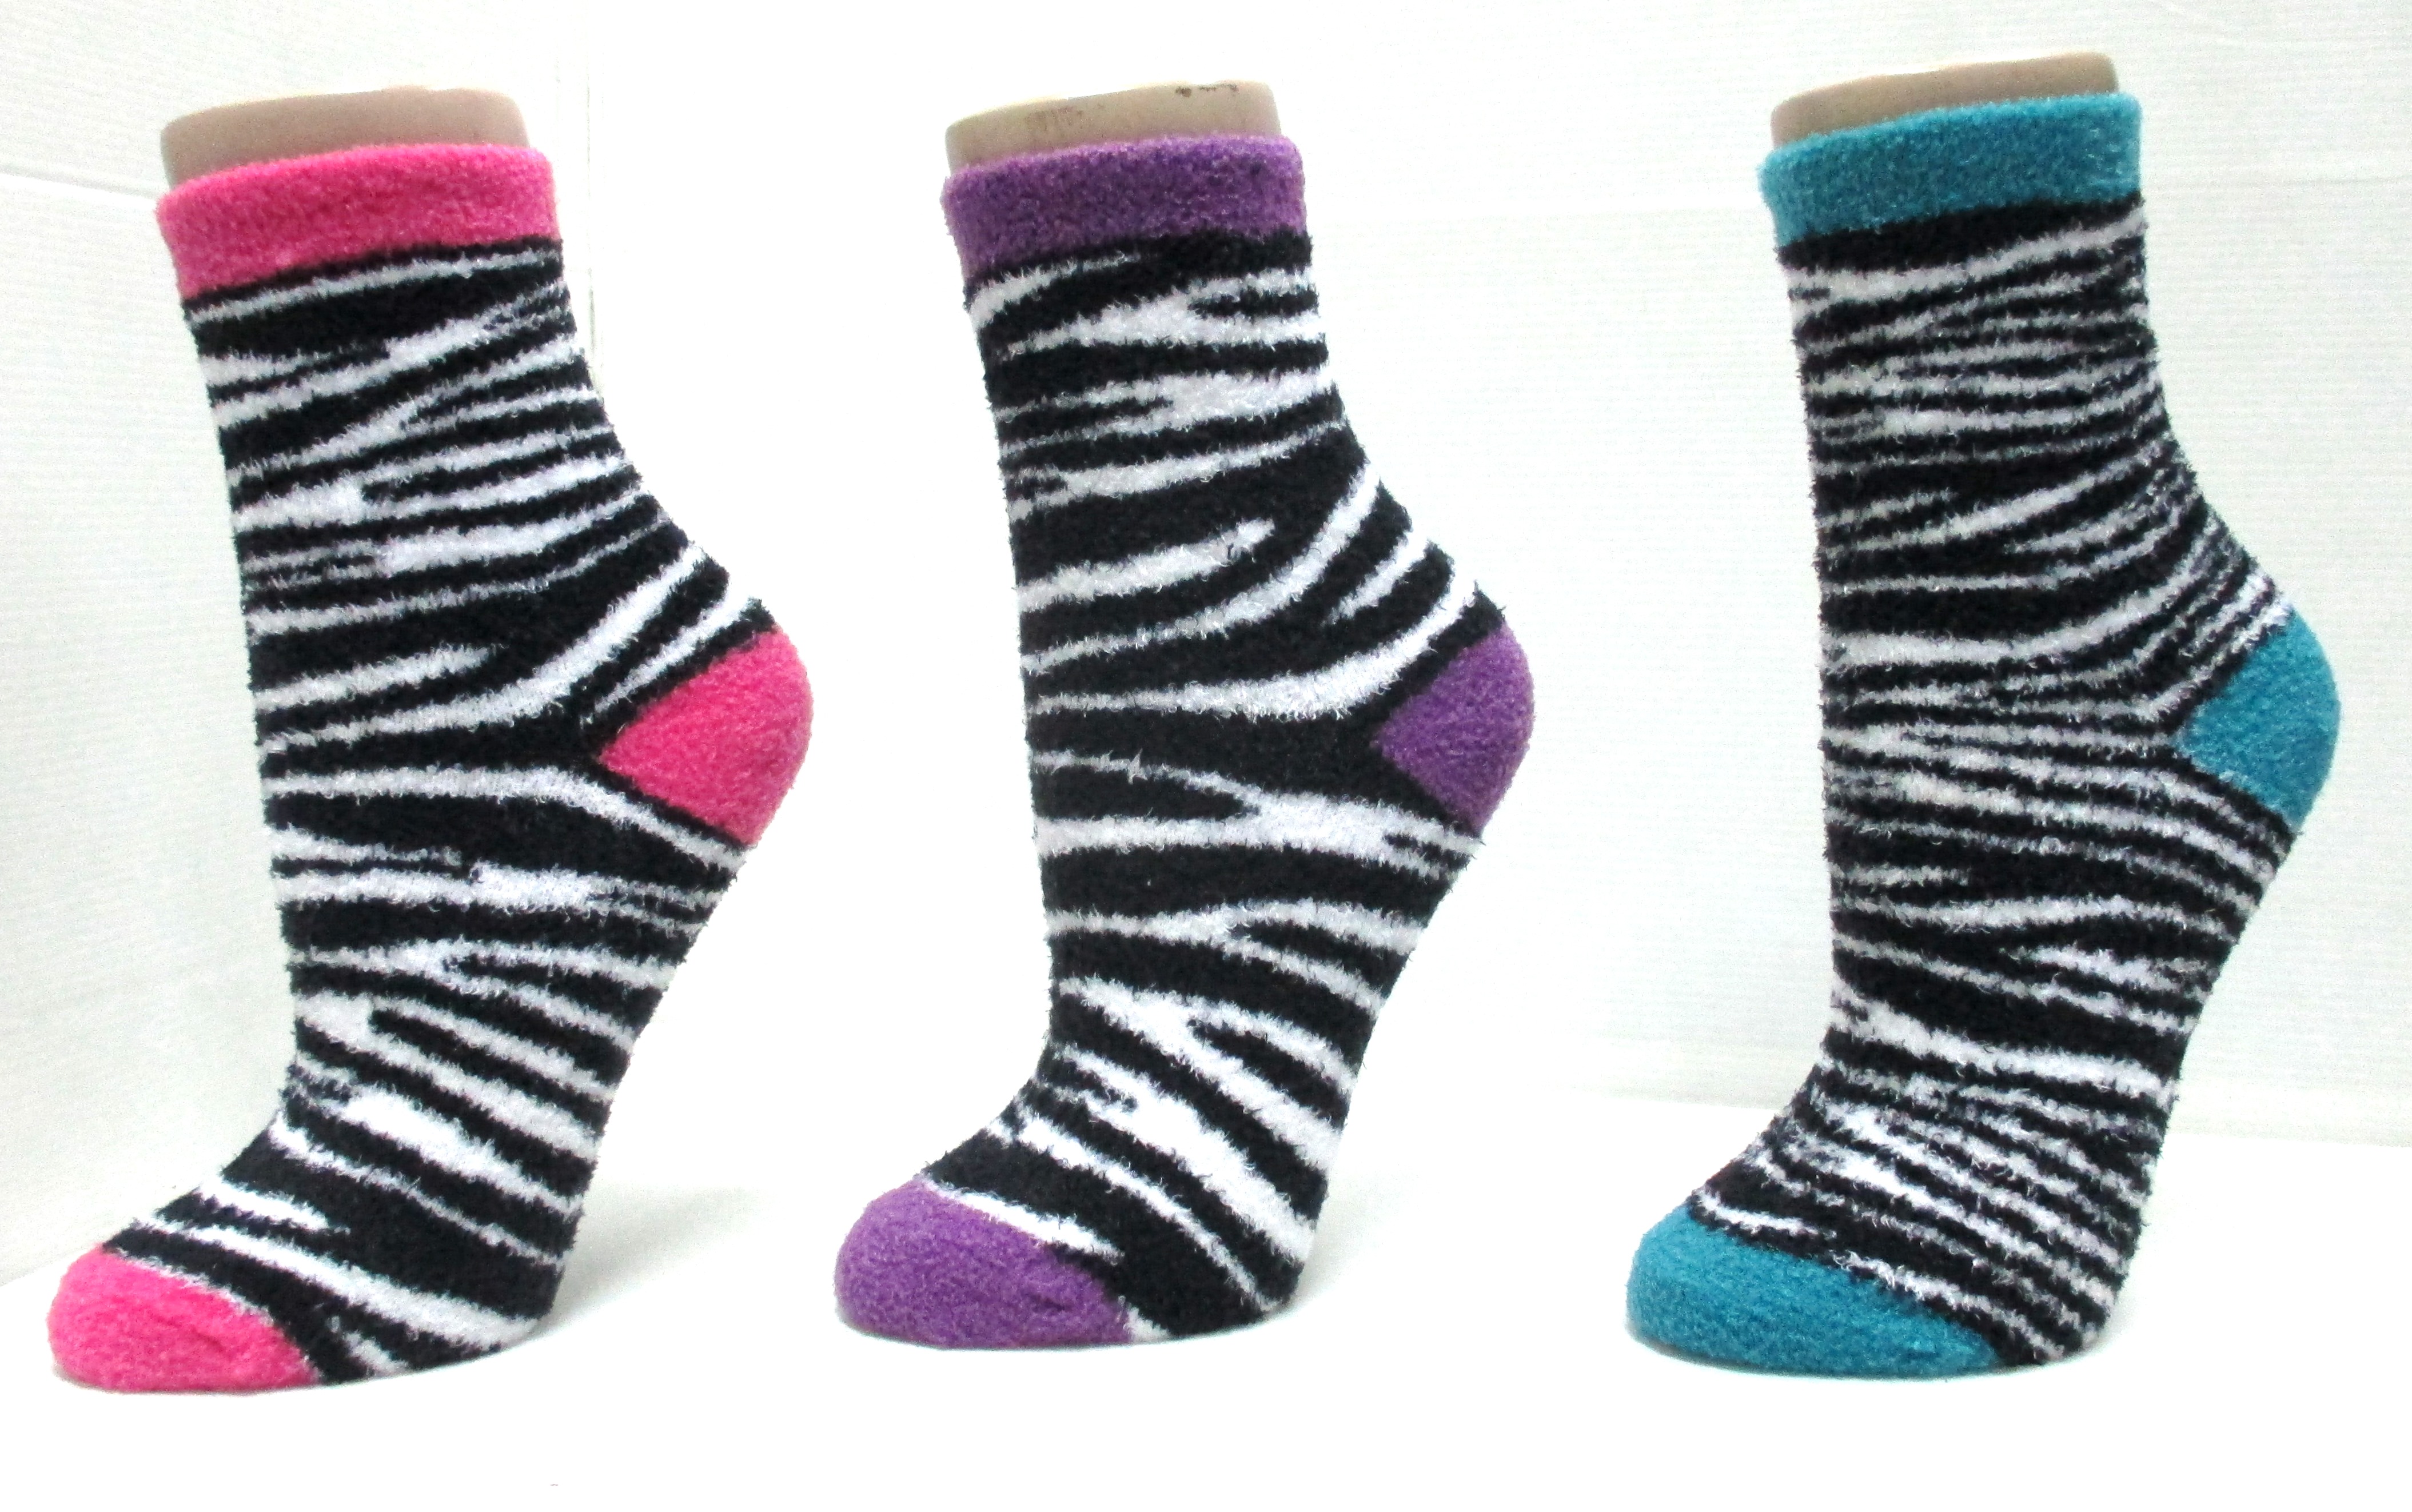 polyester nylon spandex ankle fuzzy socks